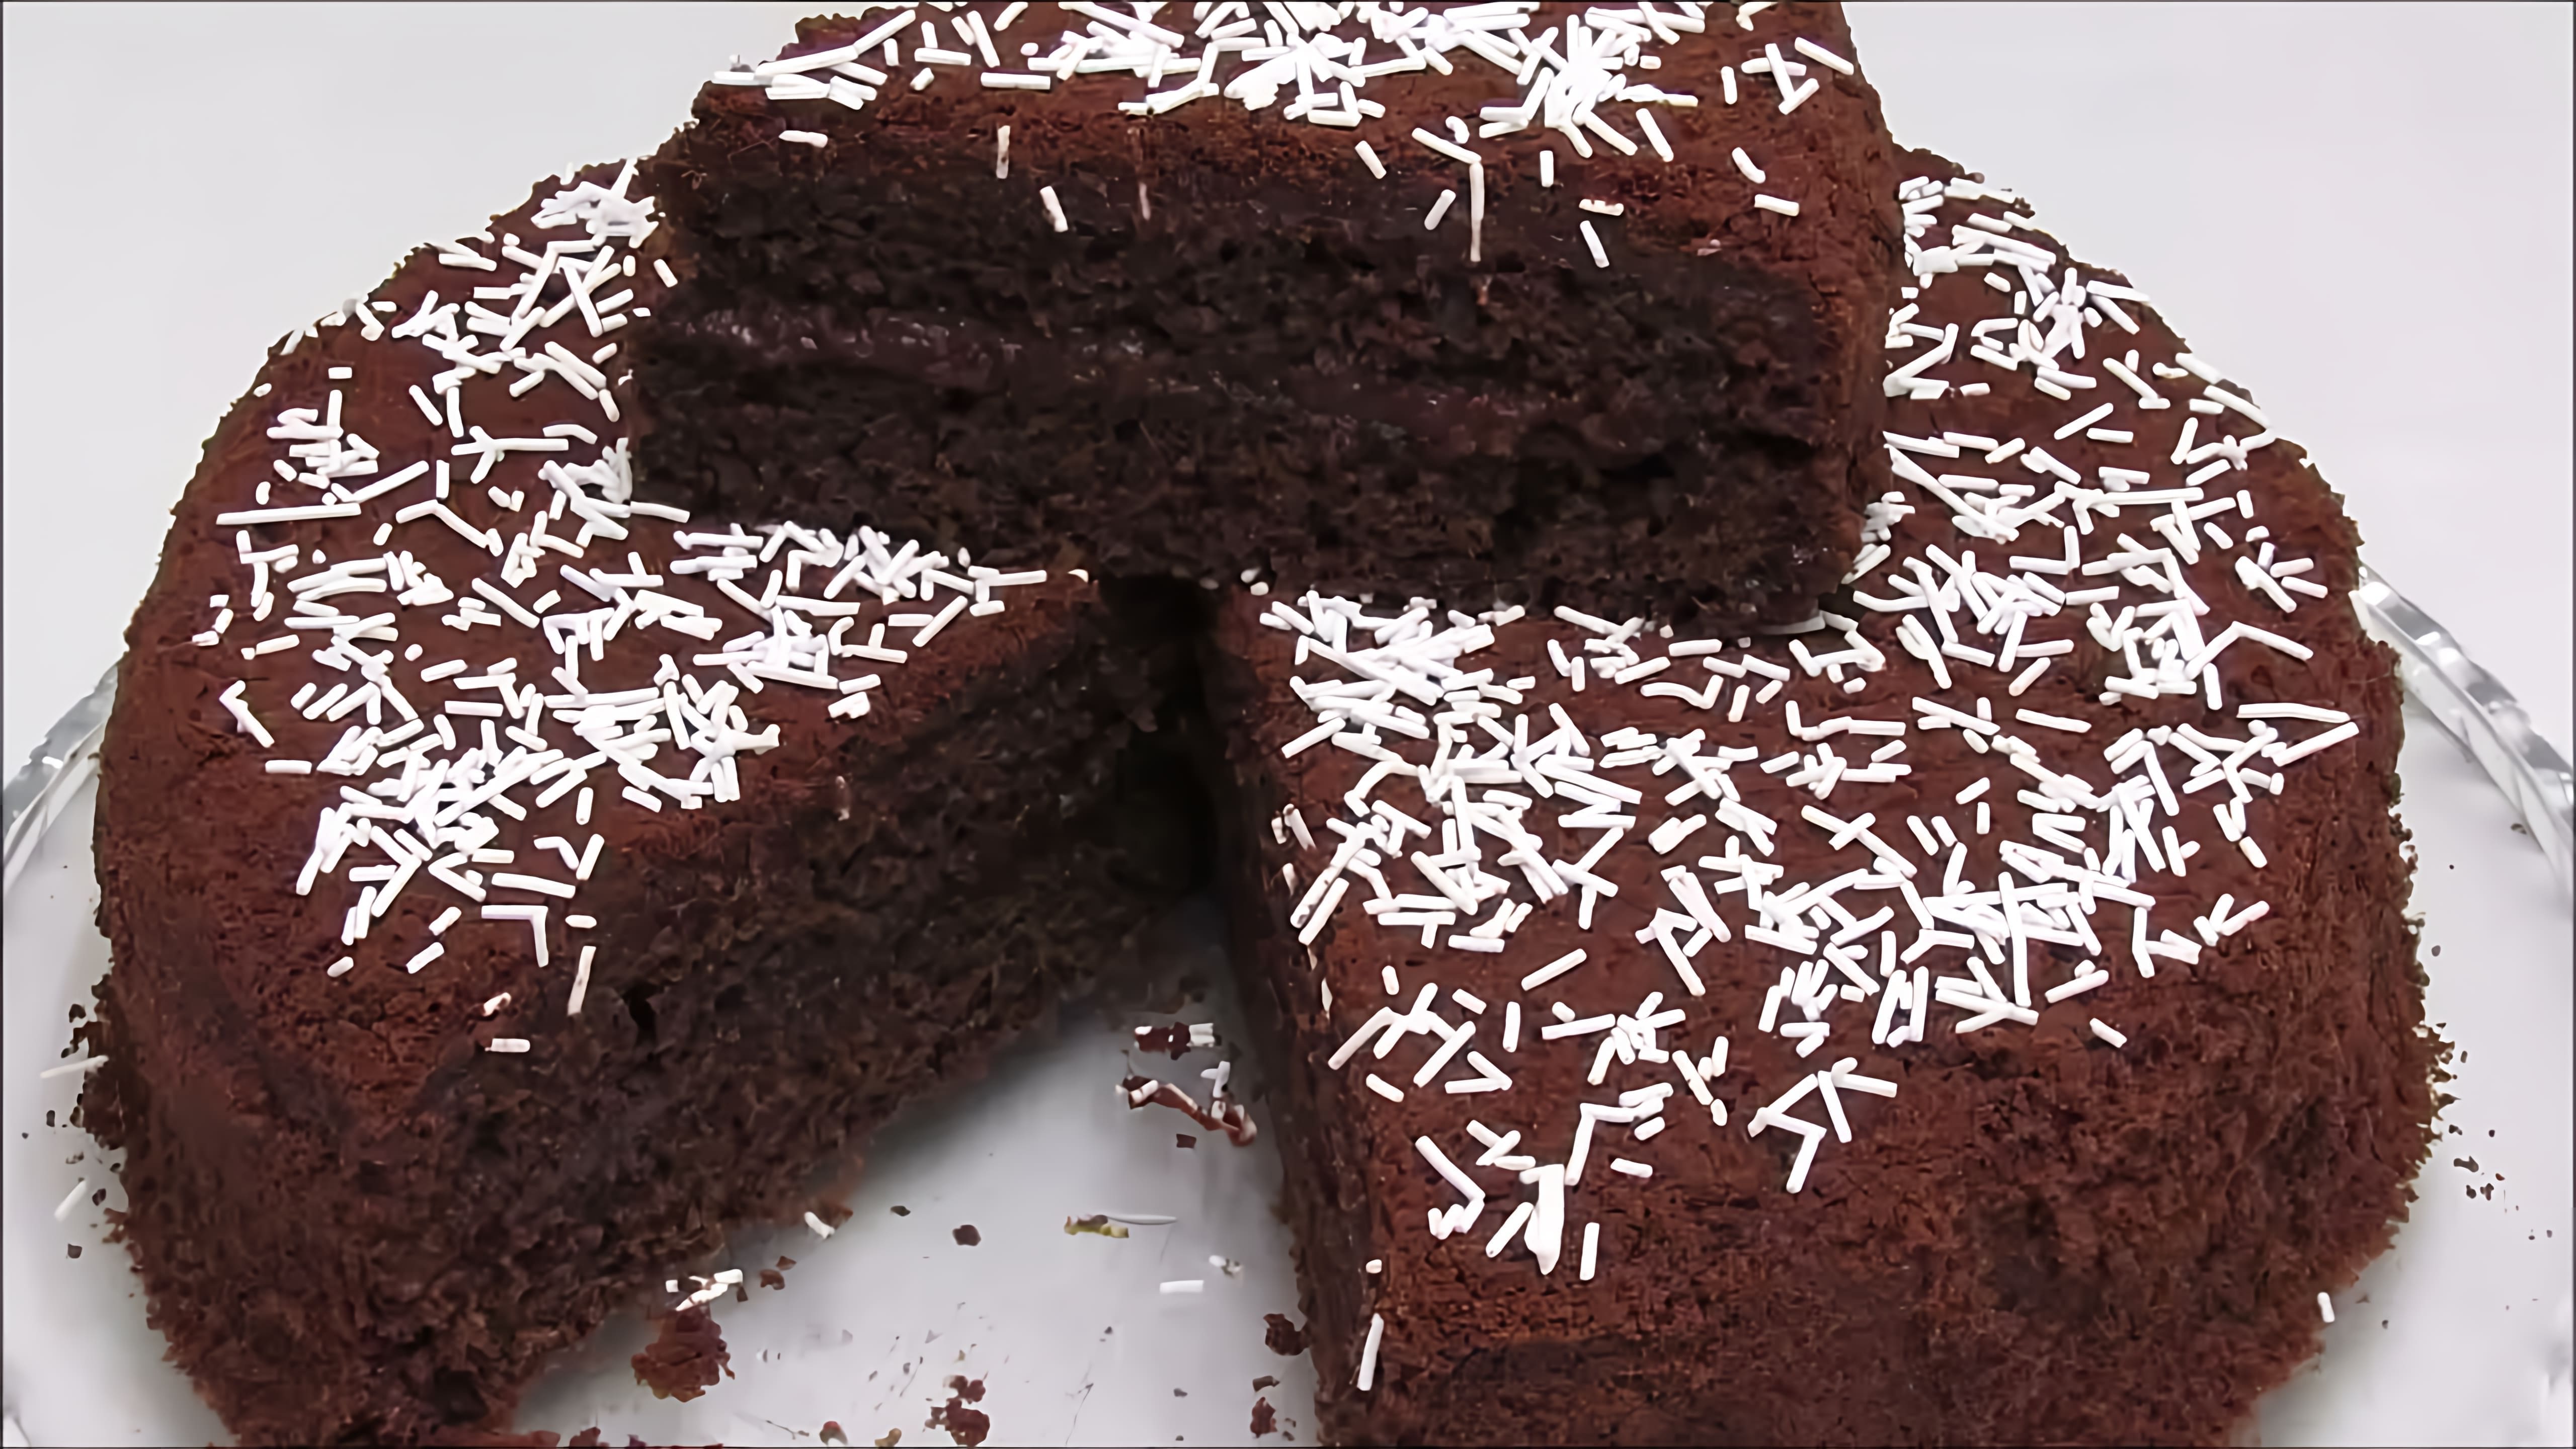 В этом видео демонстрируется простой рецепт шоколадного торта без использования миксера и других сложных приспособлений